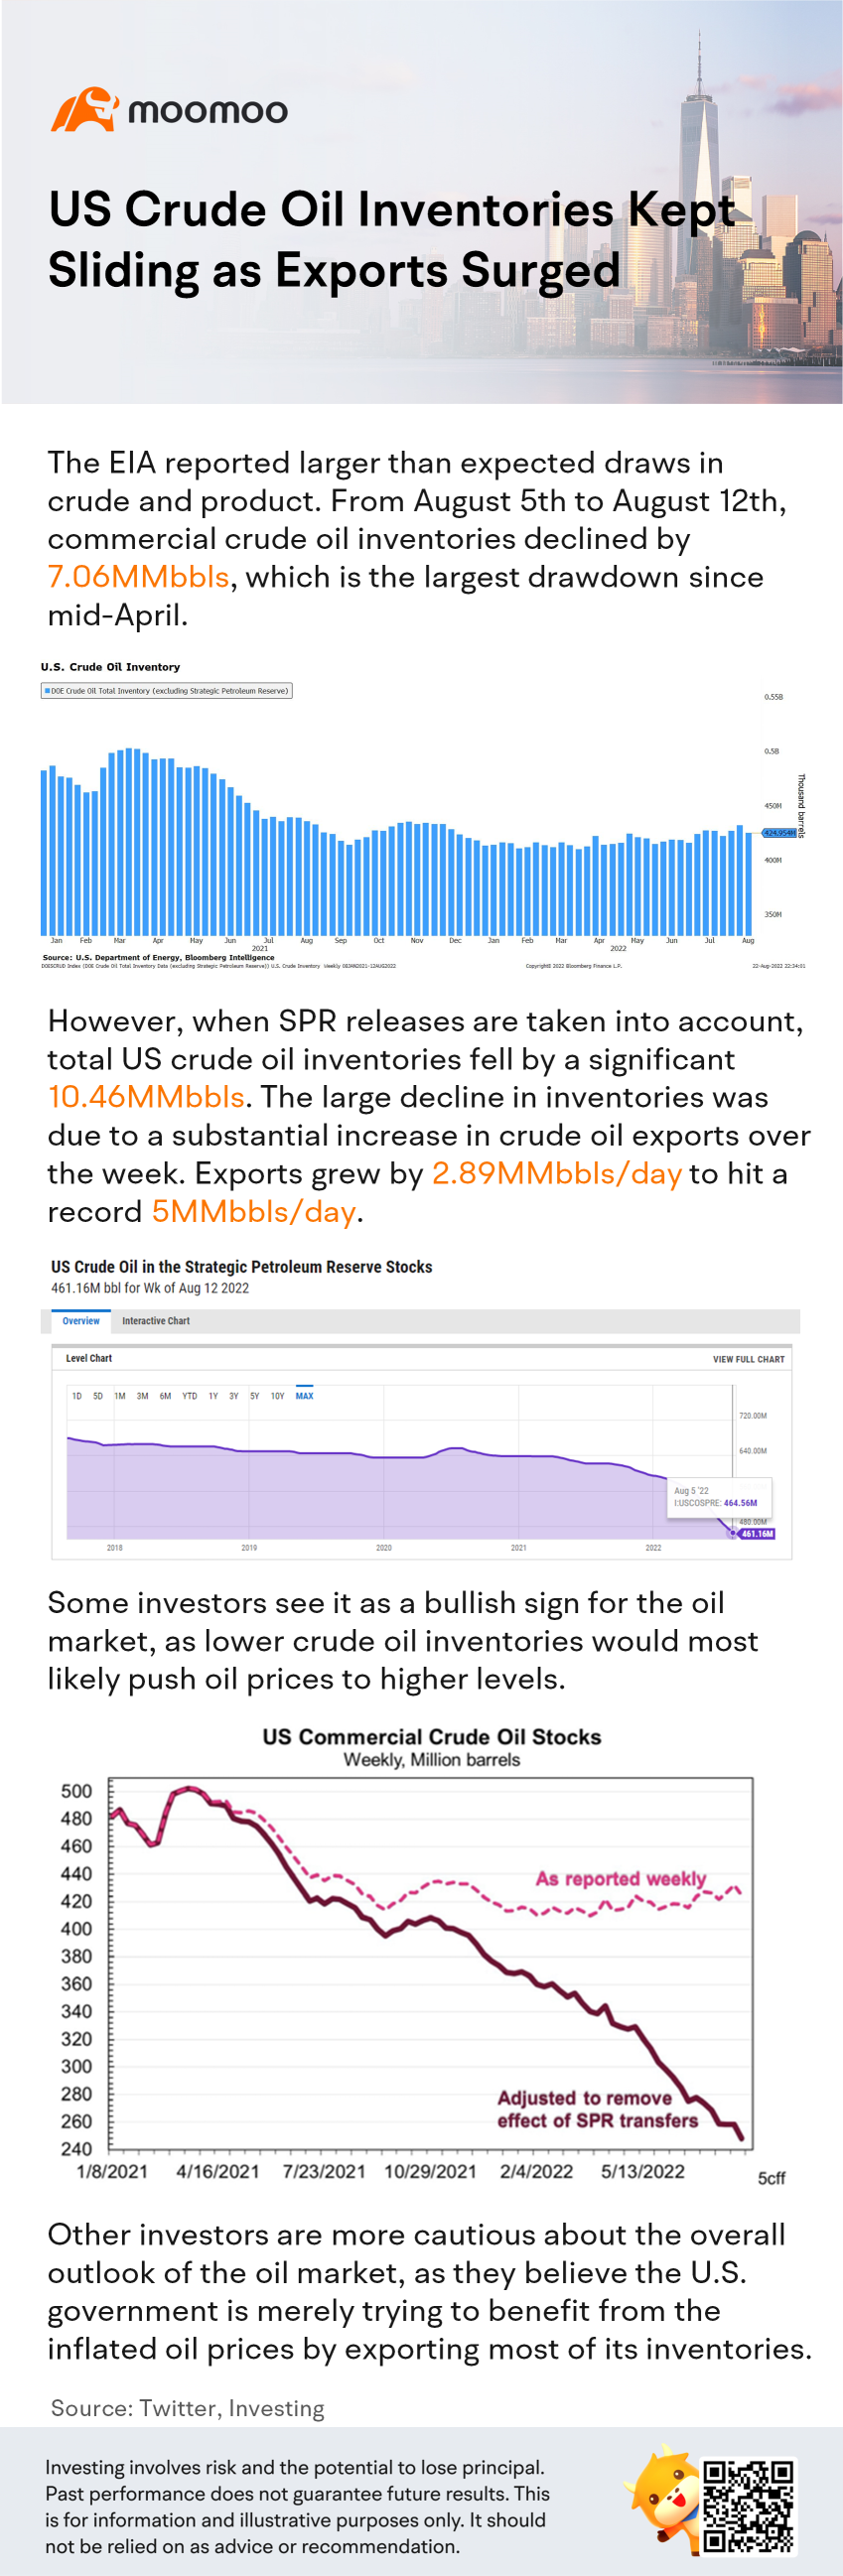 アメリカの原油在庫が下がり続けて輸出が急増している